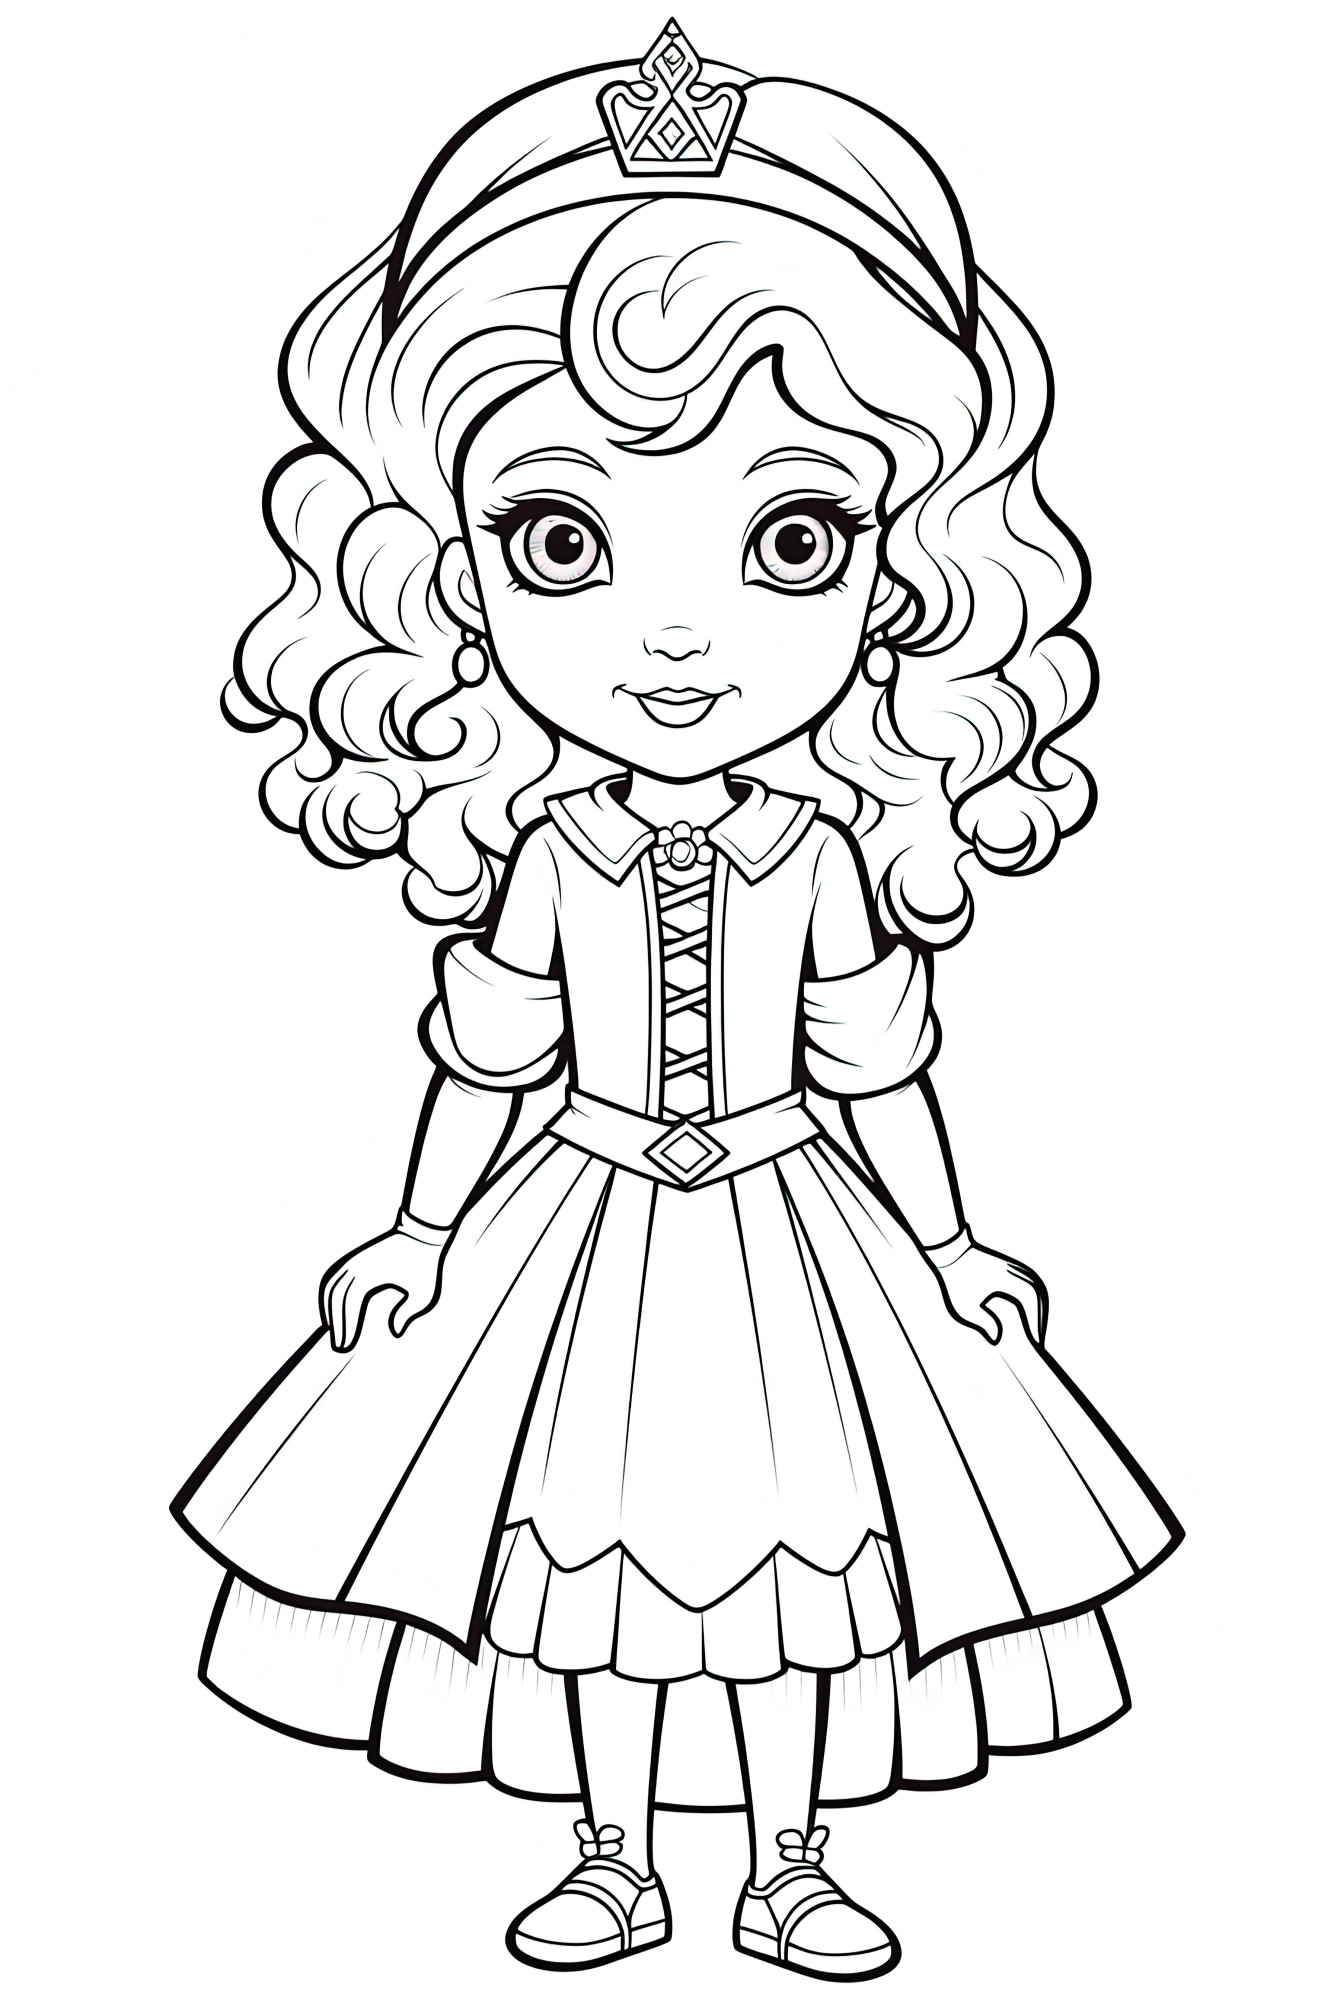 Раскраска для детей: кукла принцессы с выразительными глазами и шикарном платье